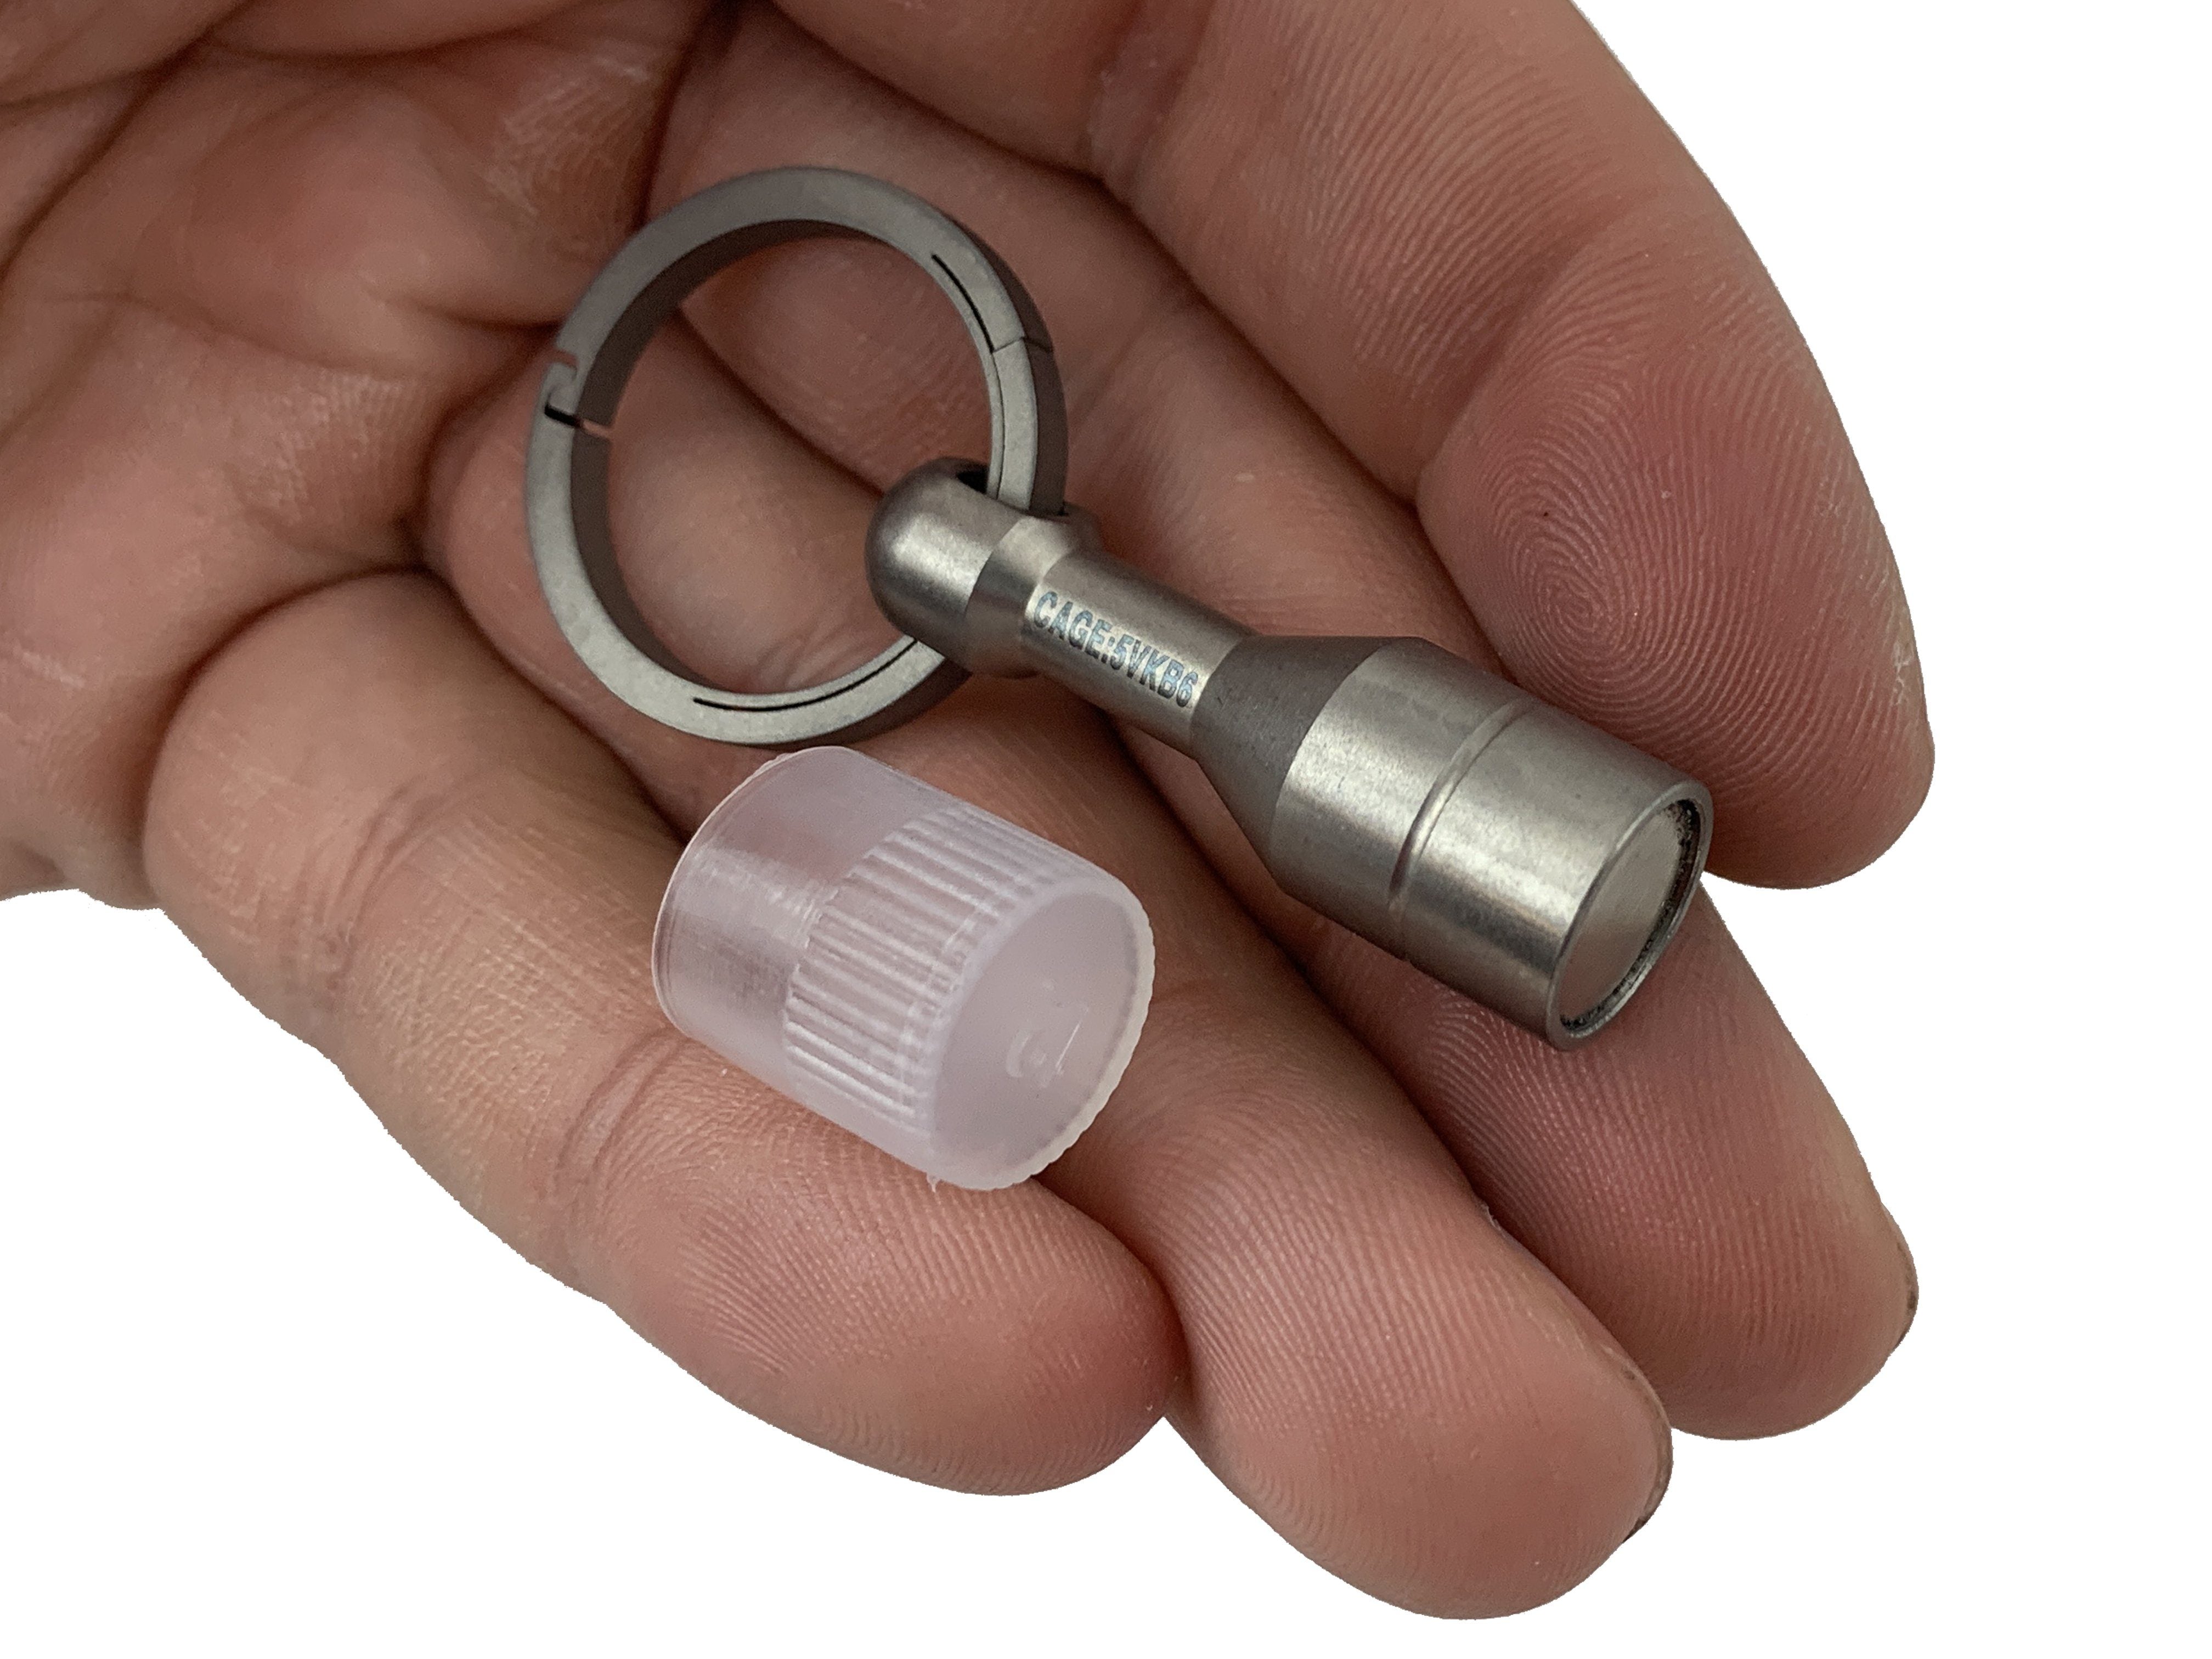 Titanium Magnetic Ferrous Tester + Living Spring Key Ring